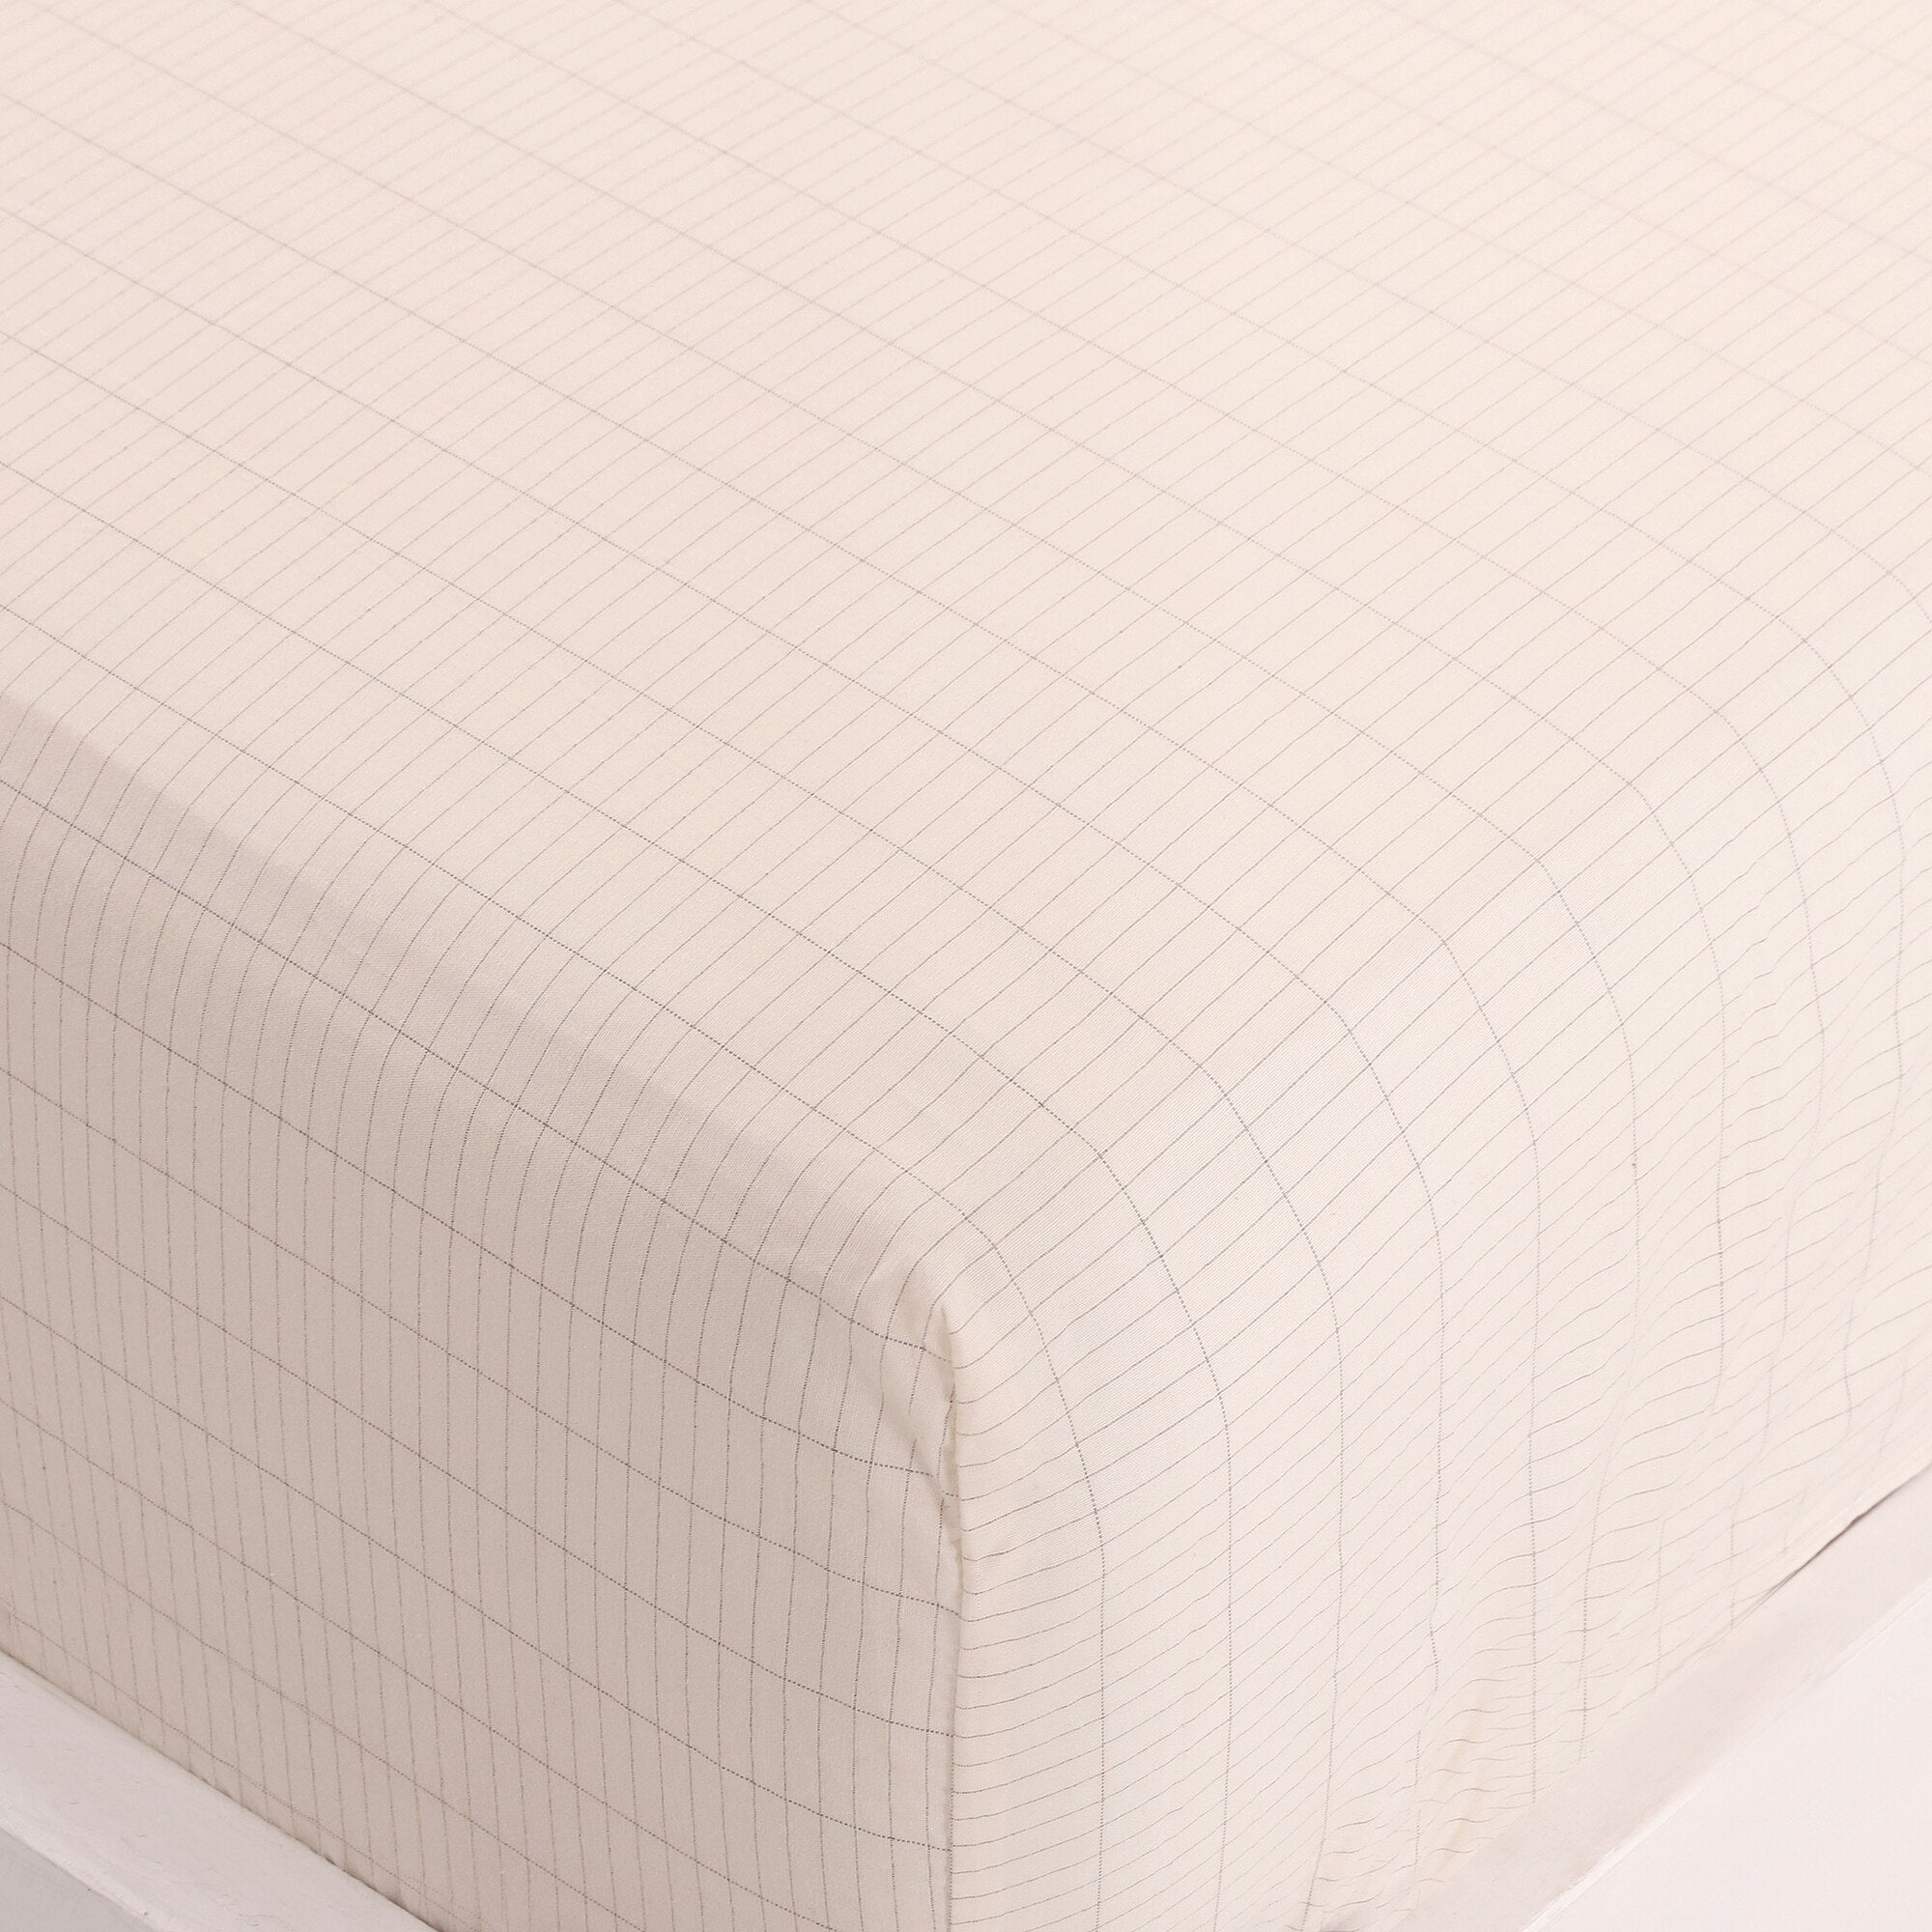 ملاءة أرضية مقاس كوين (153 × 203 سم) مصنوعة من قماش فضي مضاد للميكروبات موصل لنوم صحي فضي مع 2 كيس وسادة